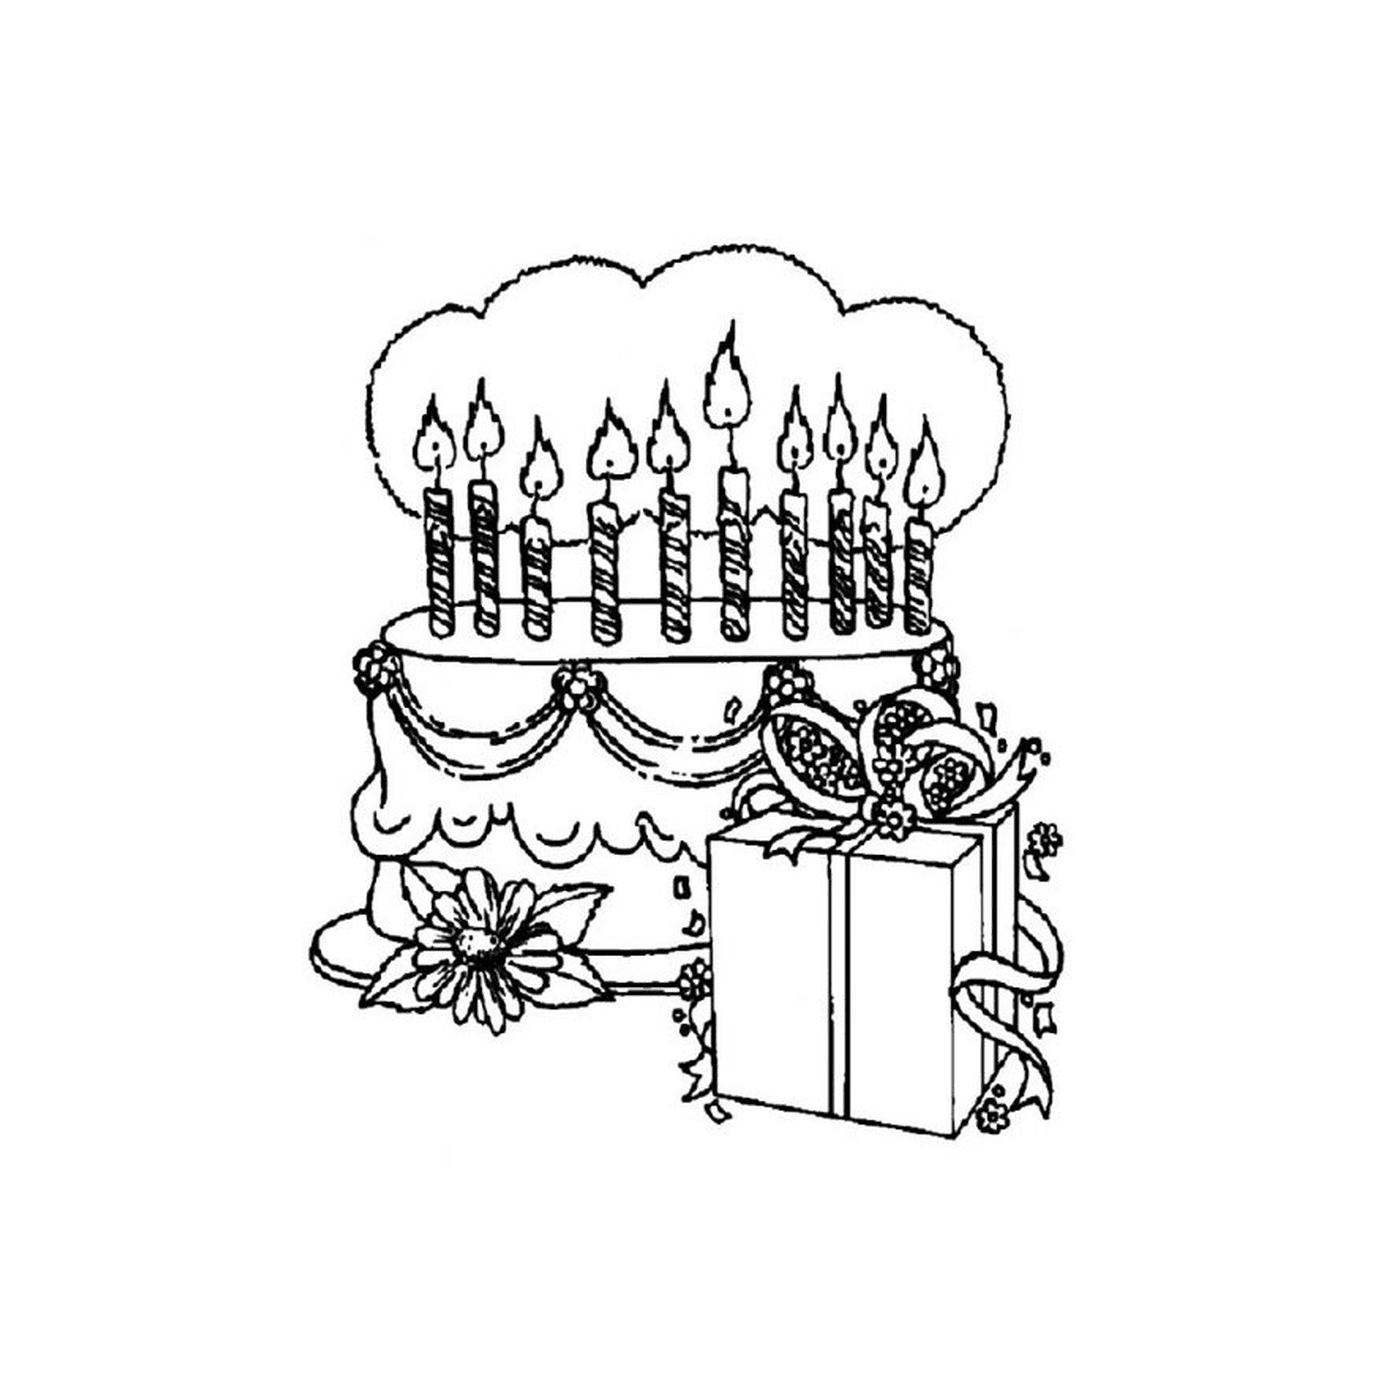   un gâteau d'anniversaire 